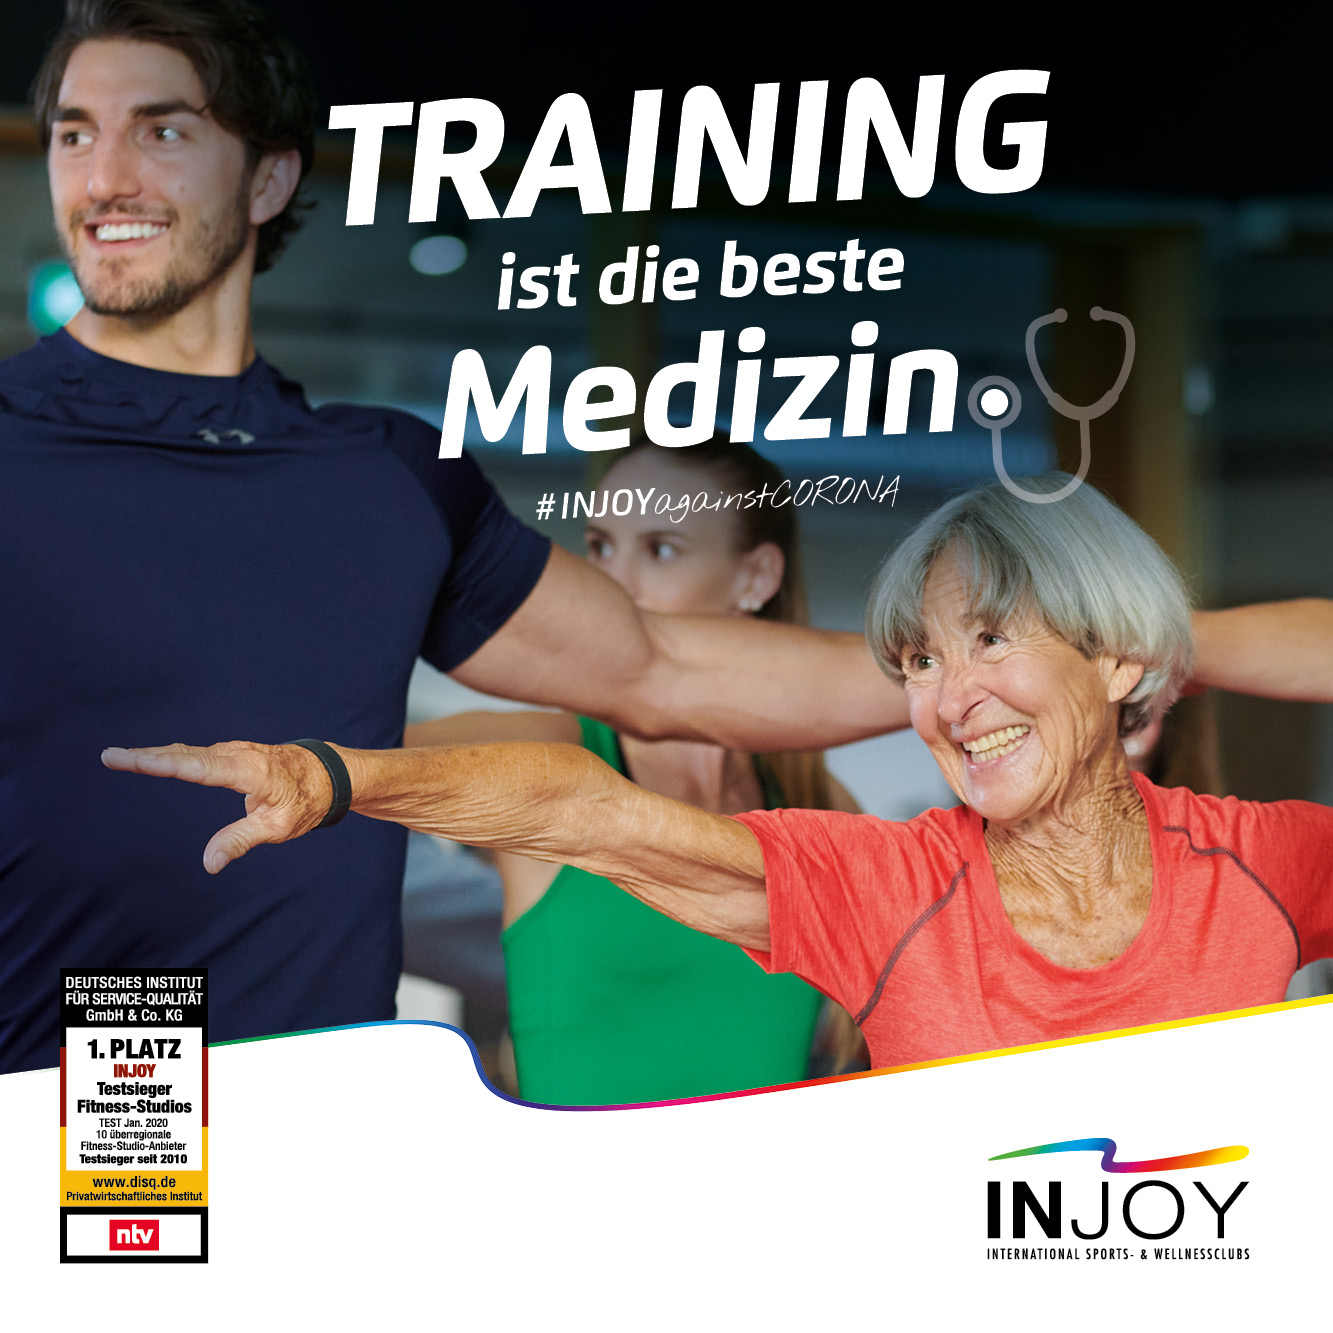 injoy_training_ist_die_beste_medizin